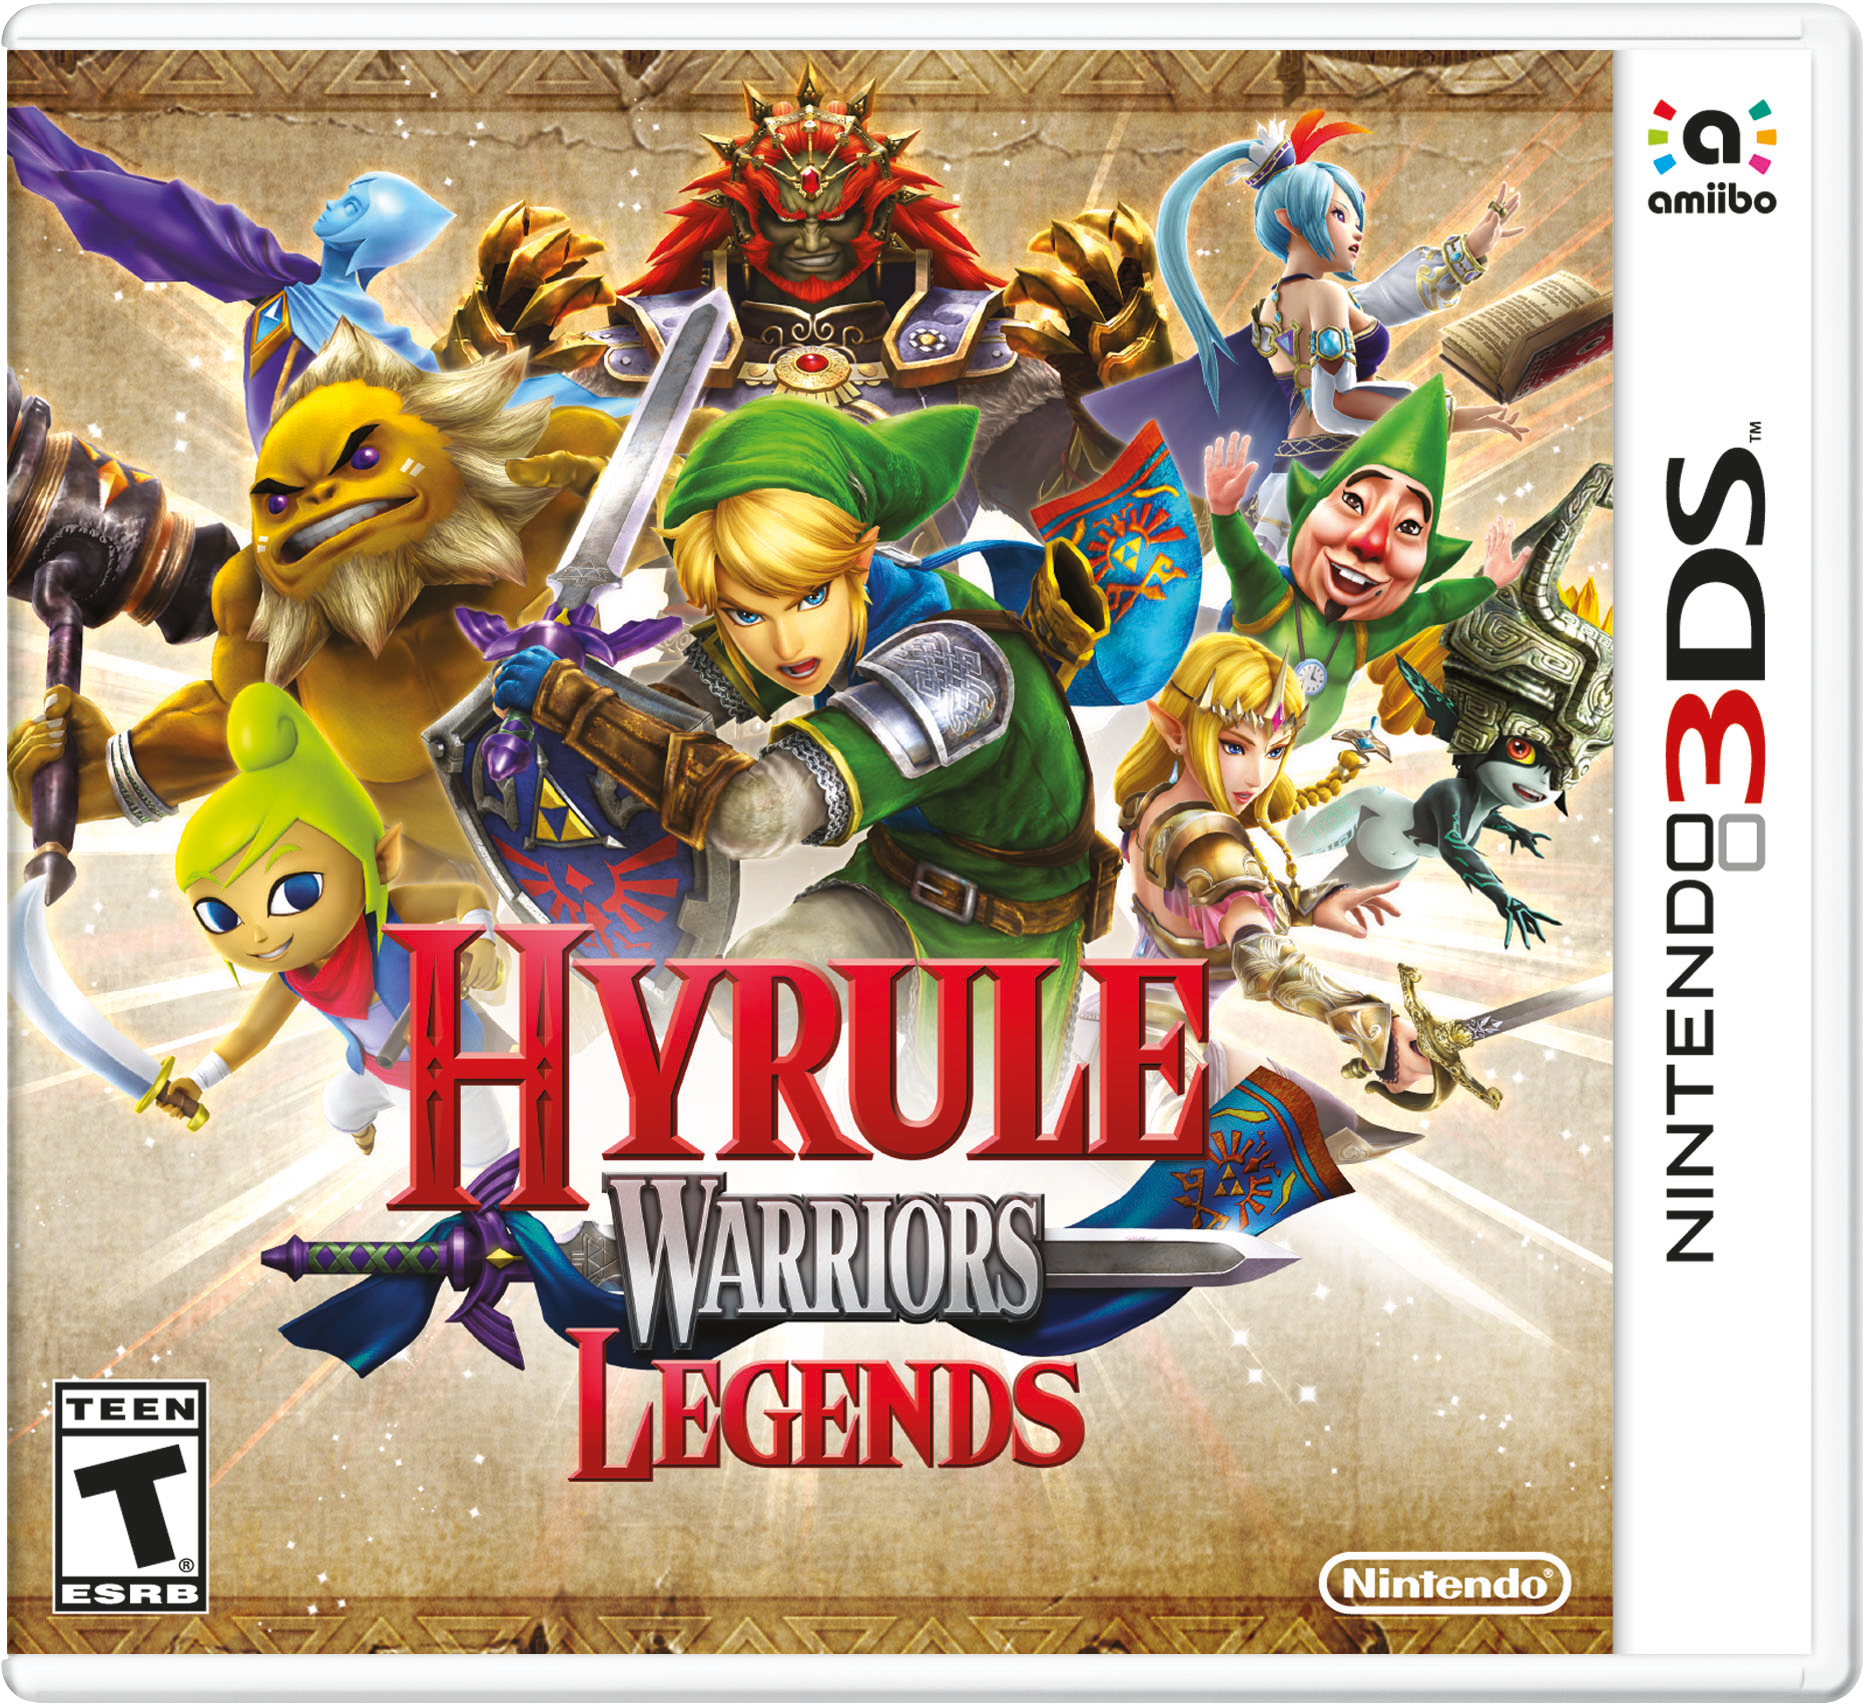 Hyrule-Warriors-Legends-Box-Art.png